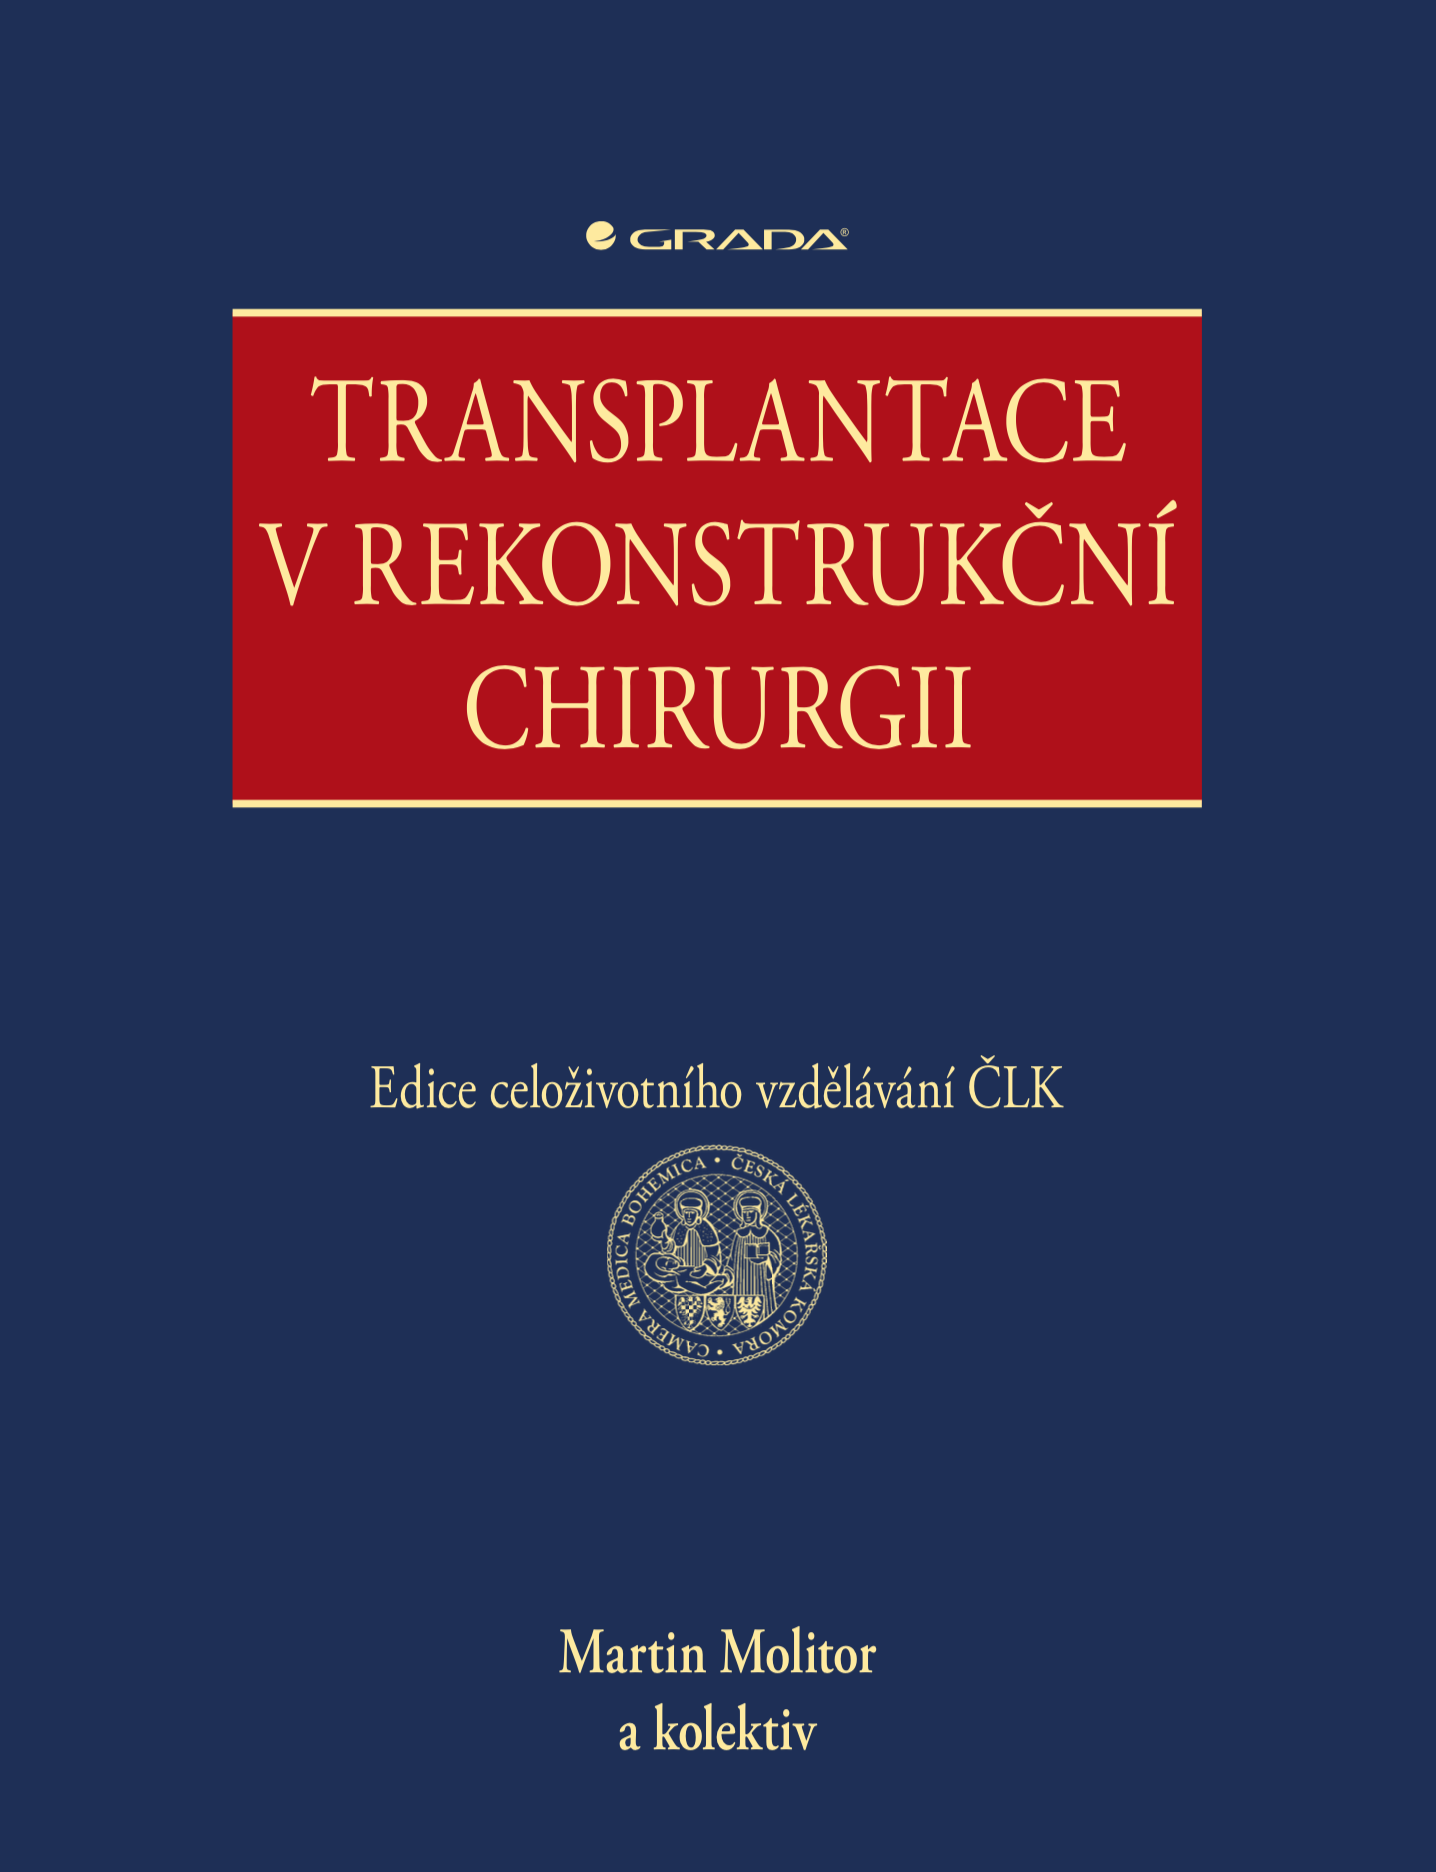 E-kniha Transplantace v rekonstrukční chirurgii - kolektiv a, Martin Molitor